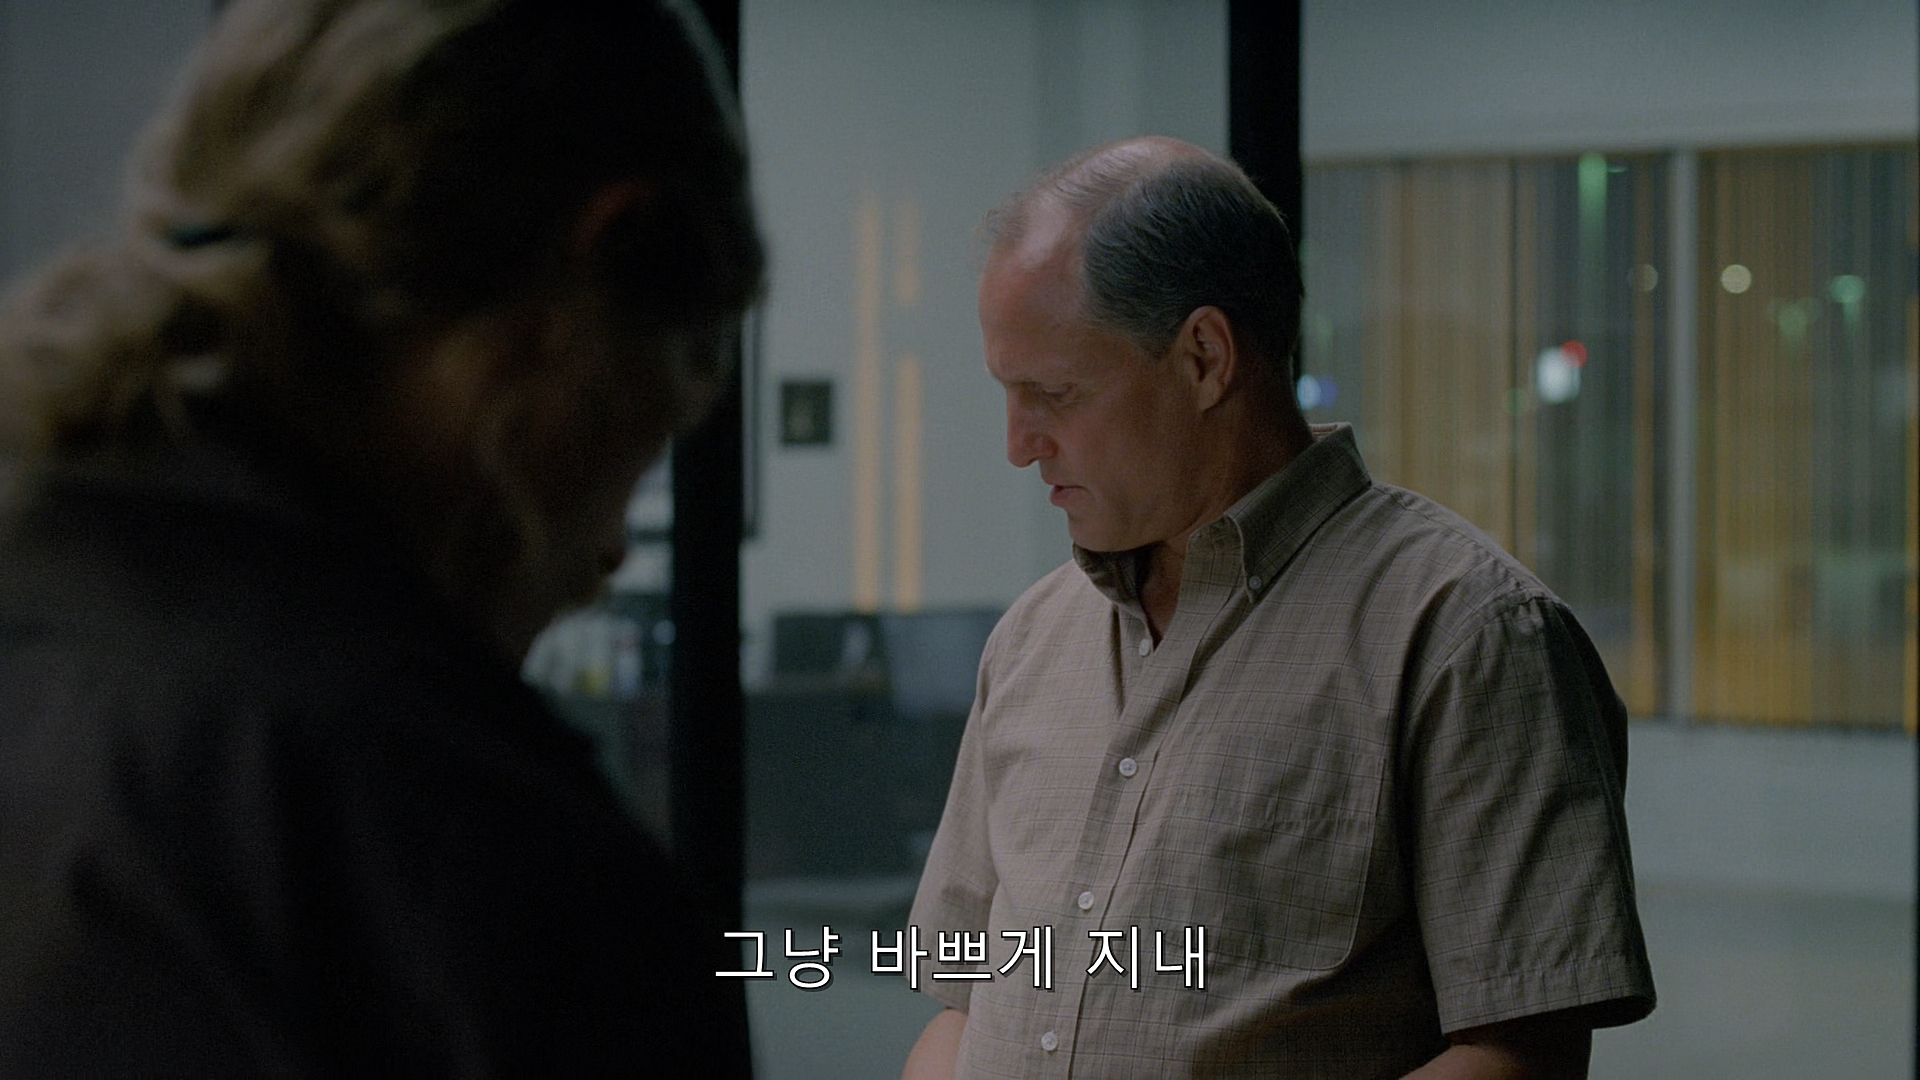 True Detective (2014) - S01E07 - After You've Gone (1080p BluRay x265 afm72).mkv_001536272.jpg